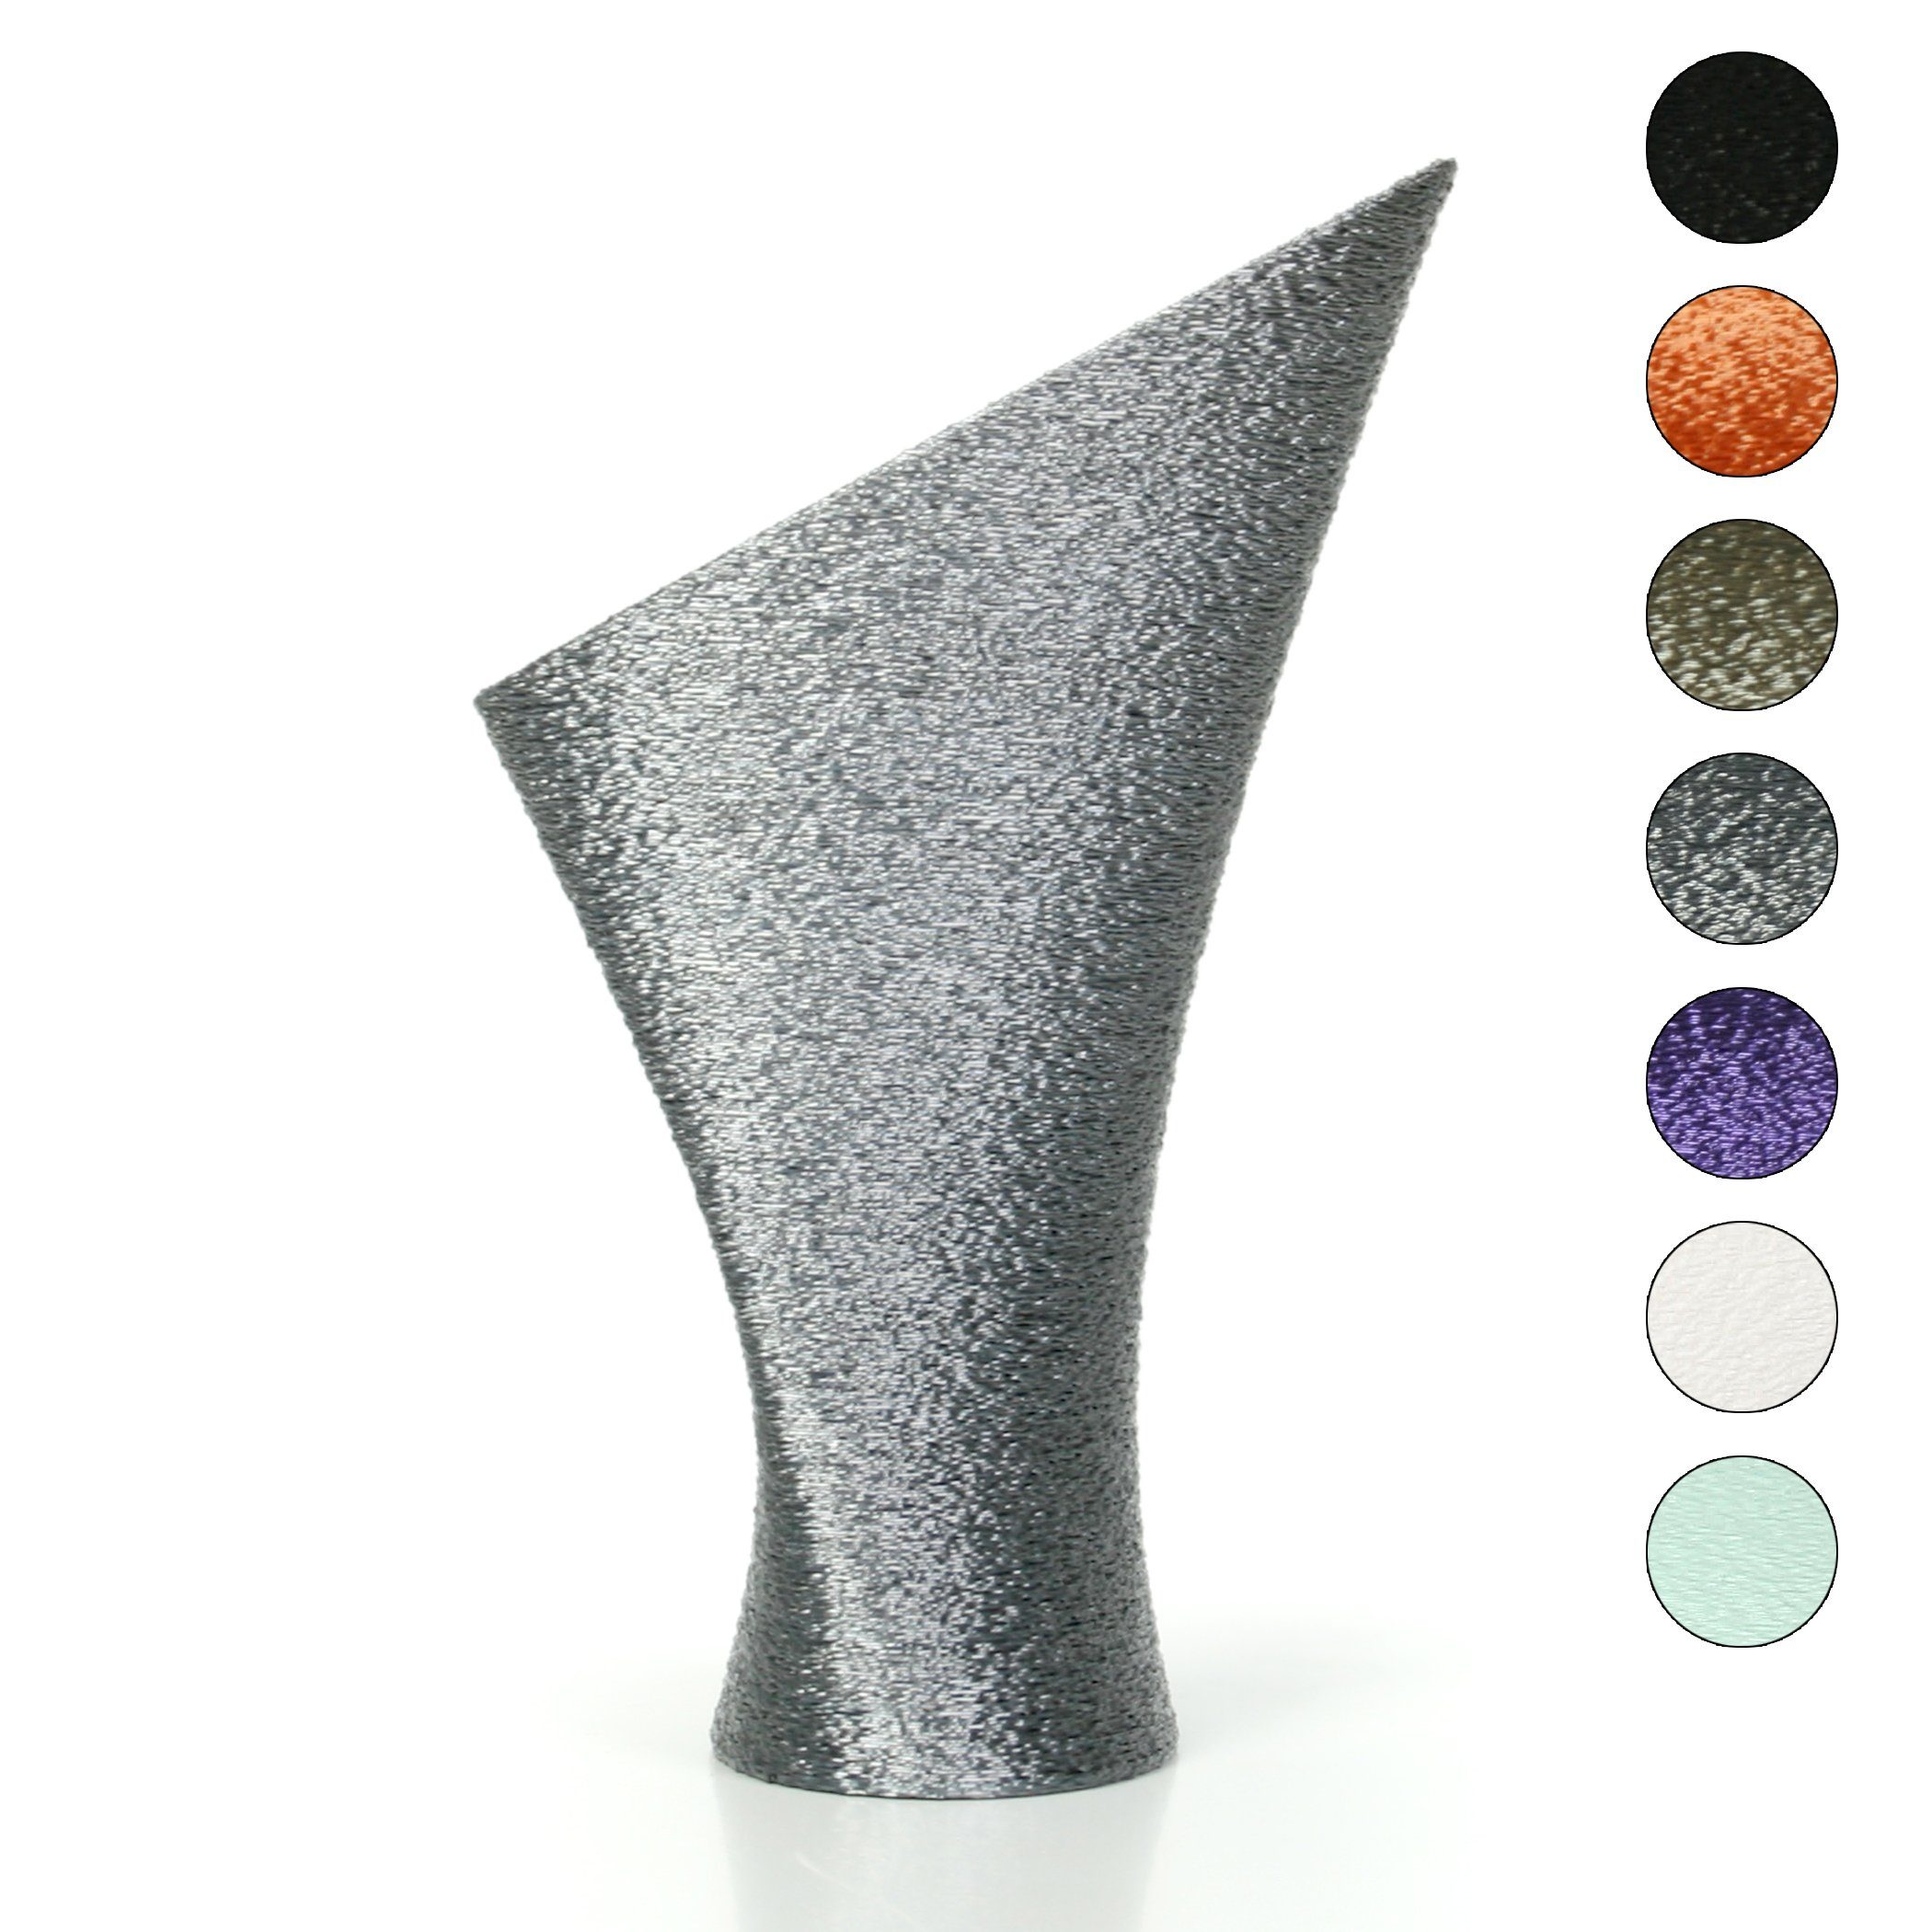 Kreative Feder Dekovase Designer Vase – Dekorative Blumenvase aus Bio-Kunststoff, aus nachwachsenden Rohstoffen; wasserdicht & bruchsicher Old Silver